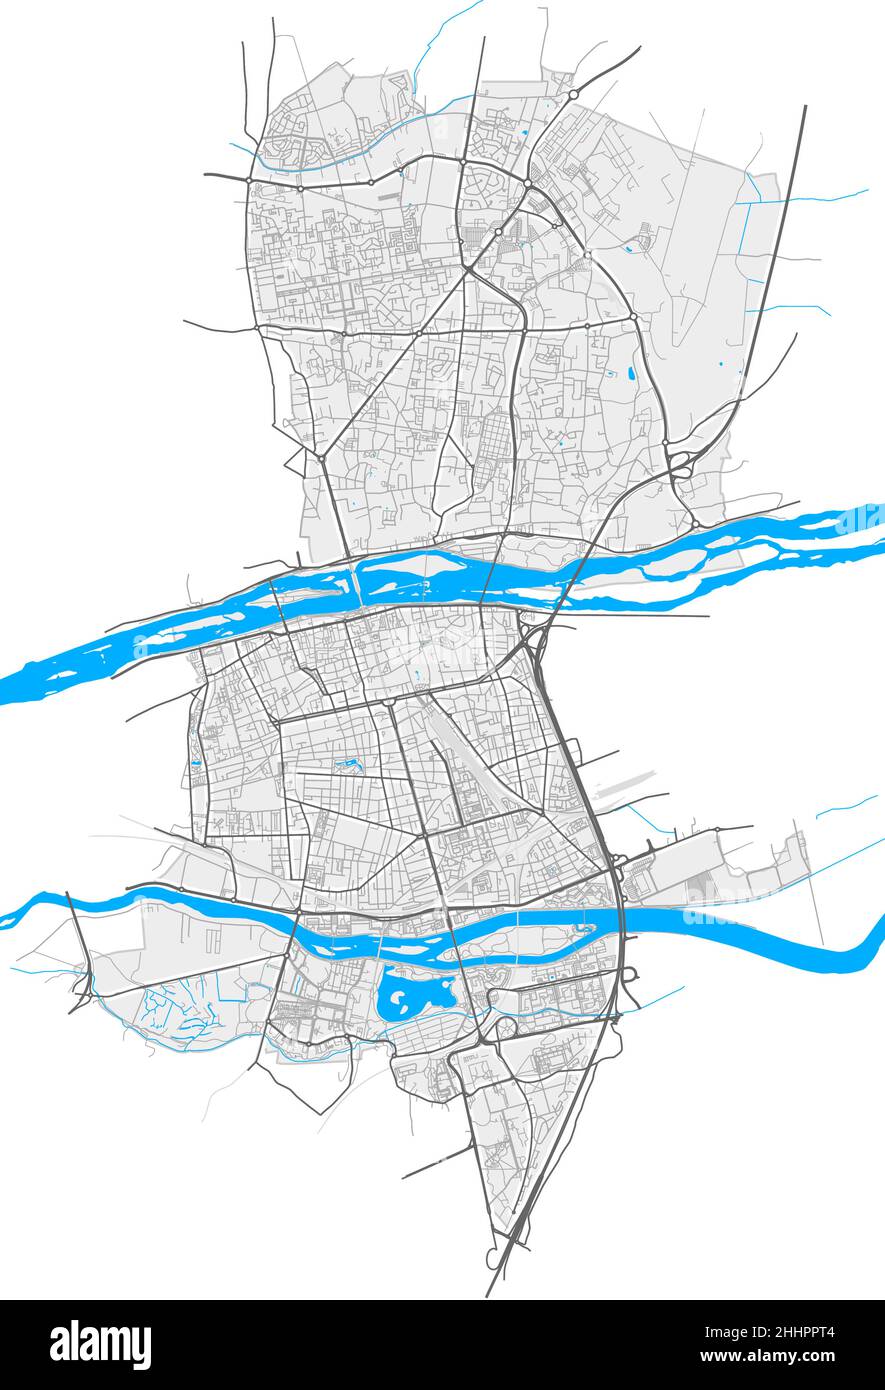 Tours, Indre-et-Loire, Francia mappa vettoriale ad alta risoluzione con confini della città e percorsi modificabili. Contorni bianchi per le strade principali. Molti percorsi dettagliati. Illustrazione Vettoriale